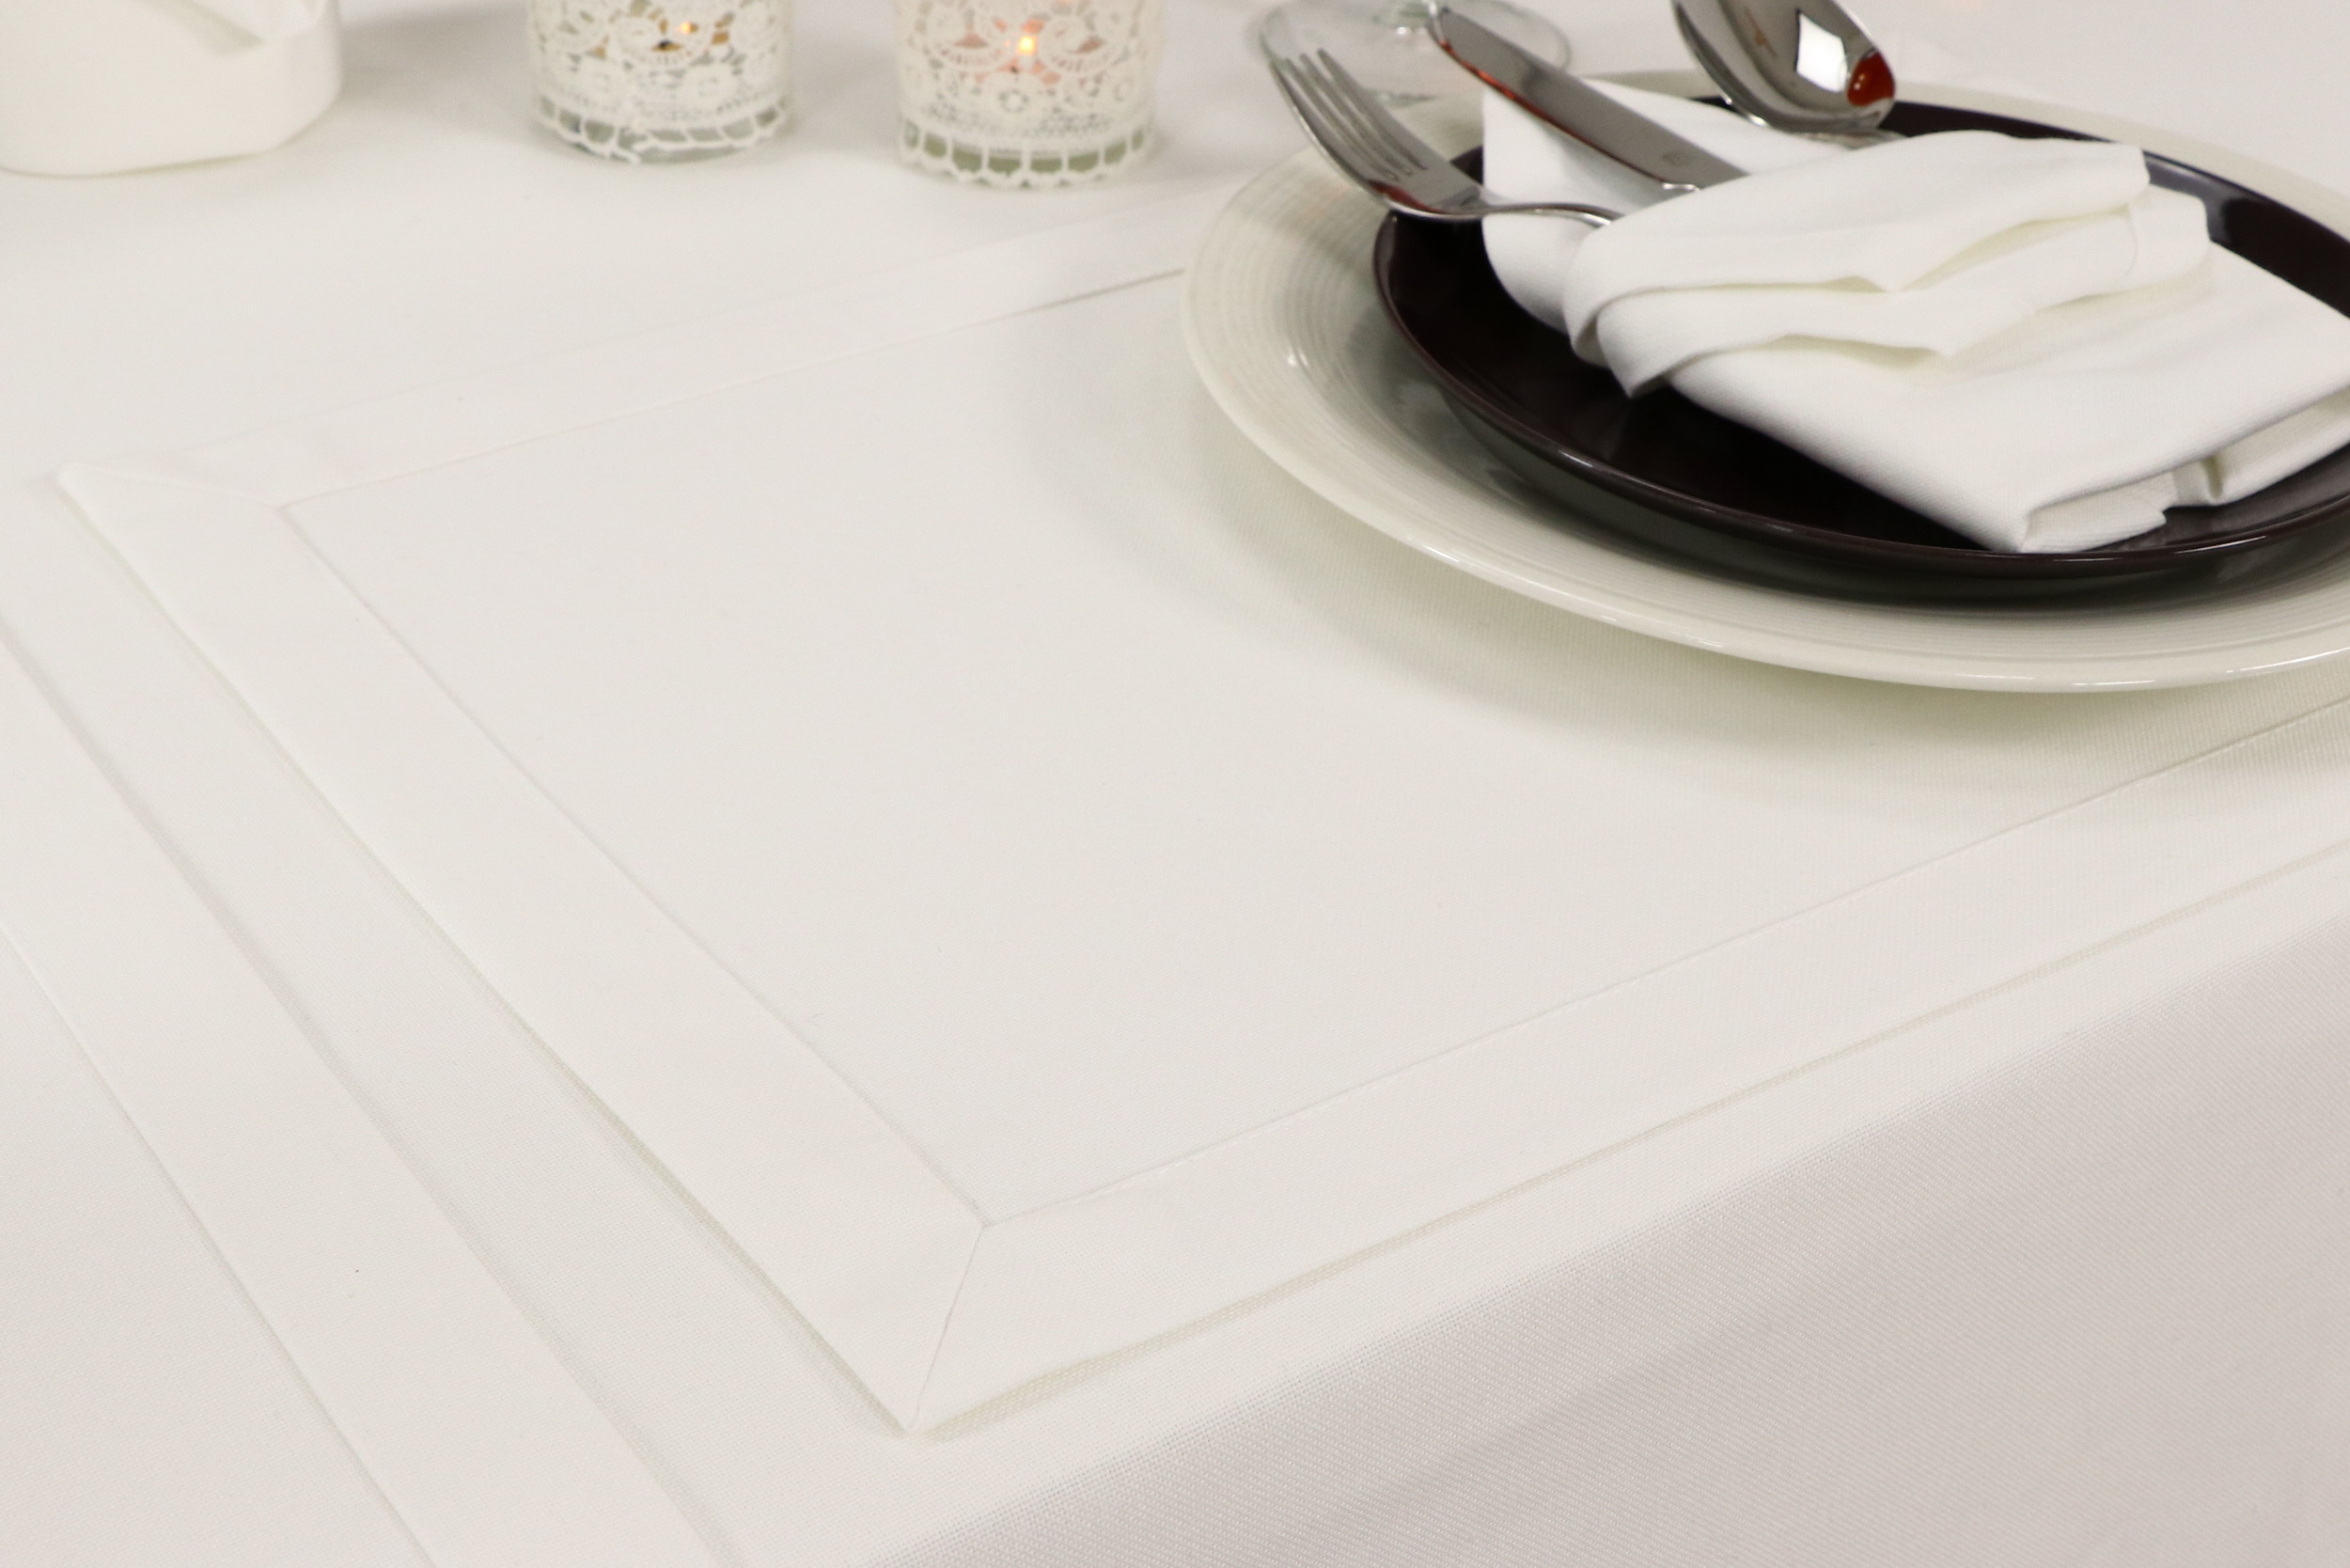 Tischset Creme Weiß ohne Muster Größe 32x42 cm Platzset